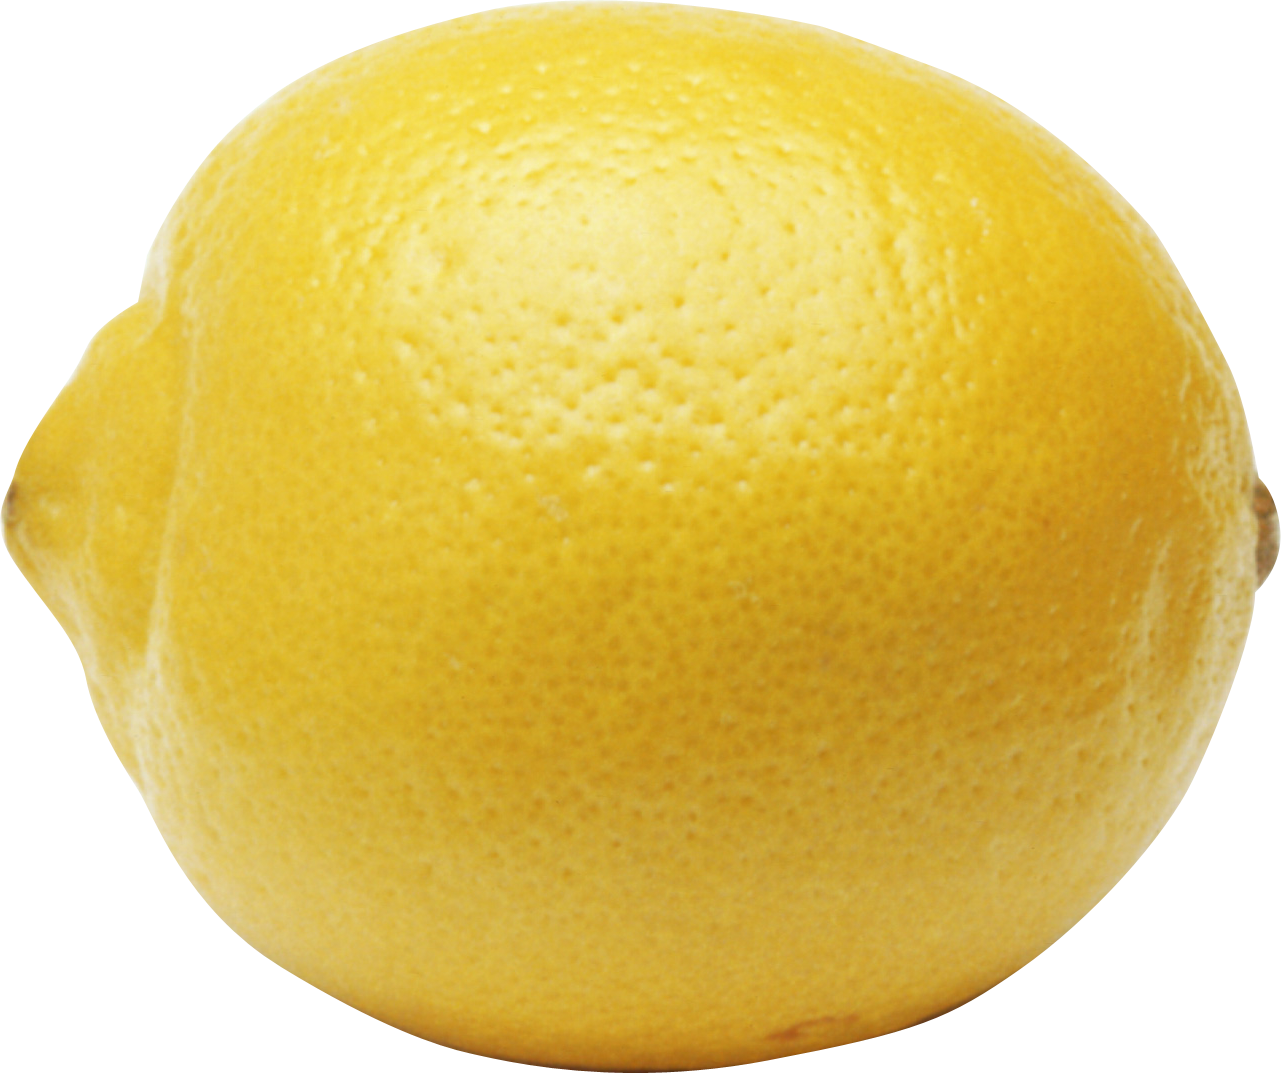 Limone